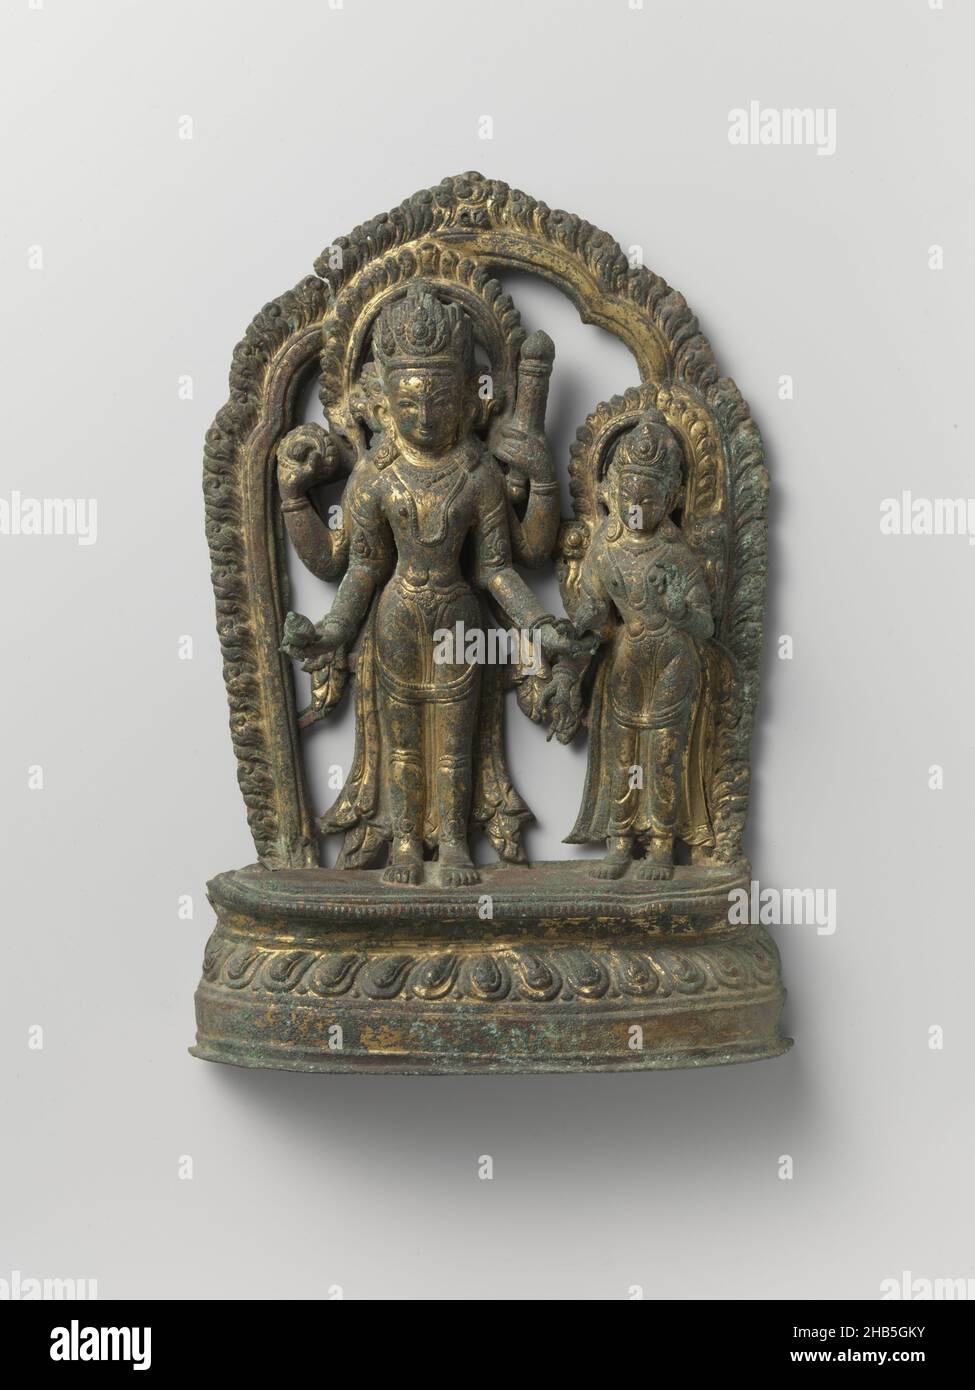 Image du couple de dieu Vishnu et Shri, image du couple de dieu Vishnu et Shri.Entourés d'un halo, les deux divinités se trouvent sur une base de lotus.Vishnu a quatre bras avec un disque de projection et une coquille de conch dans ses mains droites et un club et lotus dans sa gauche.La déesse a deux bras; avec la main droite elle fait le geste de donner et avec la gauche de l'enseignement., Népal, 1600 - 1699, cuivre (métal), dorure (matériel),martelage, dorure, hauteur 28 cm × largeur 18,8 cm × profondeur 4,5 cm Banque D'Images